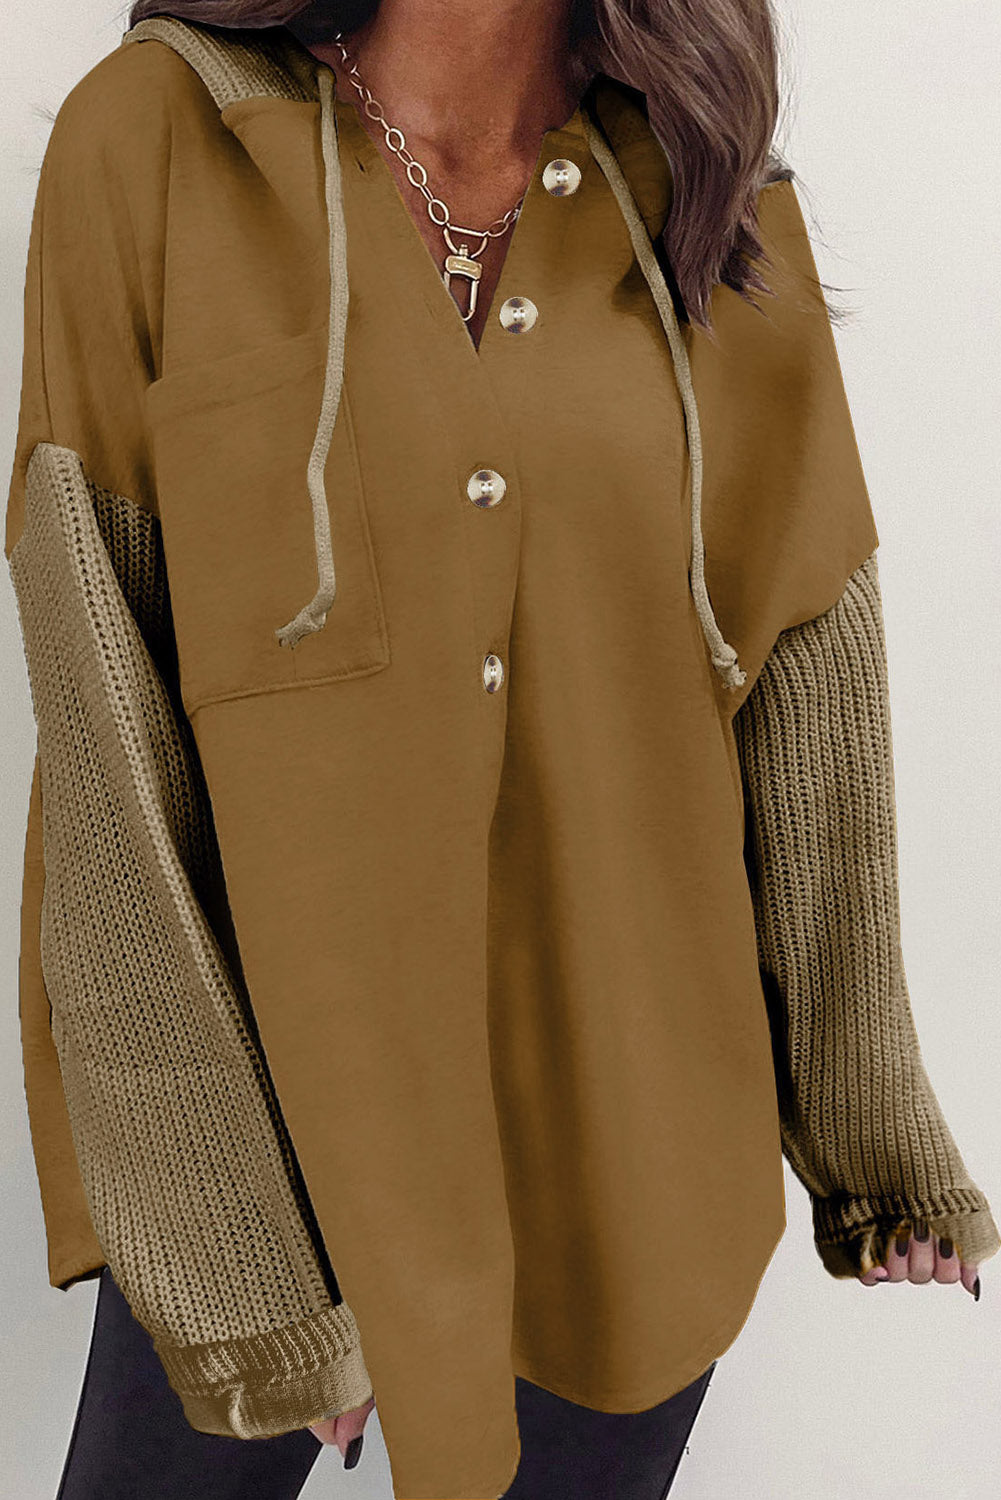 Giacca con cappuccio con maniche in maglia a contrasto marrone con bottoni